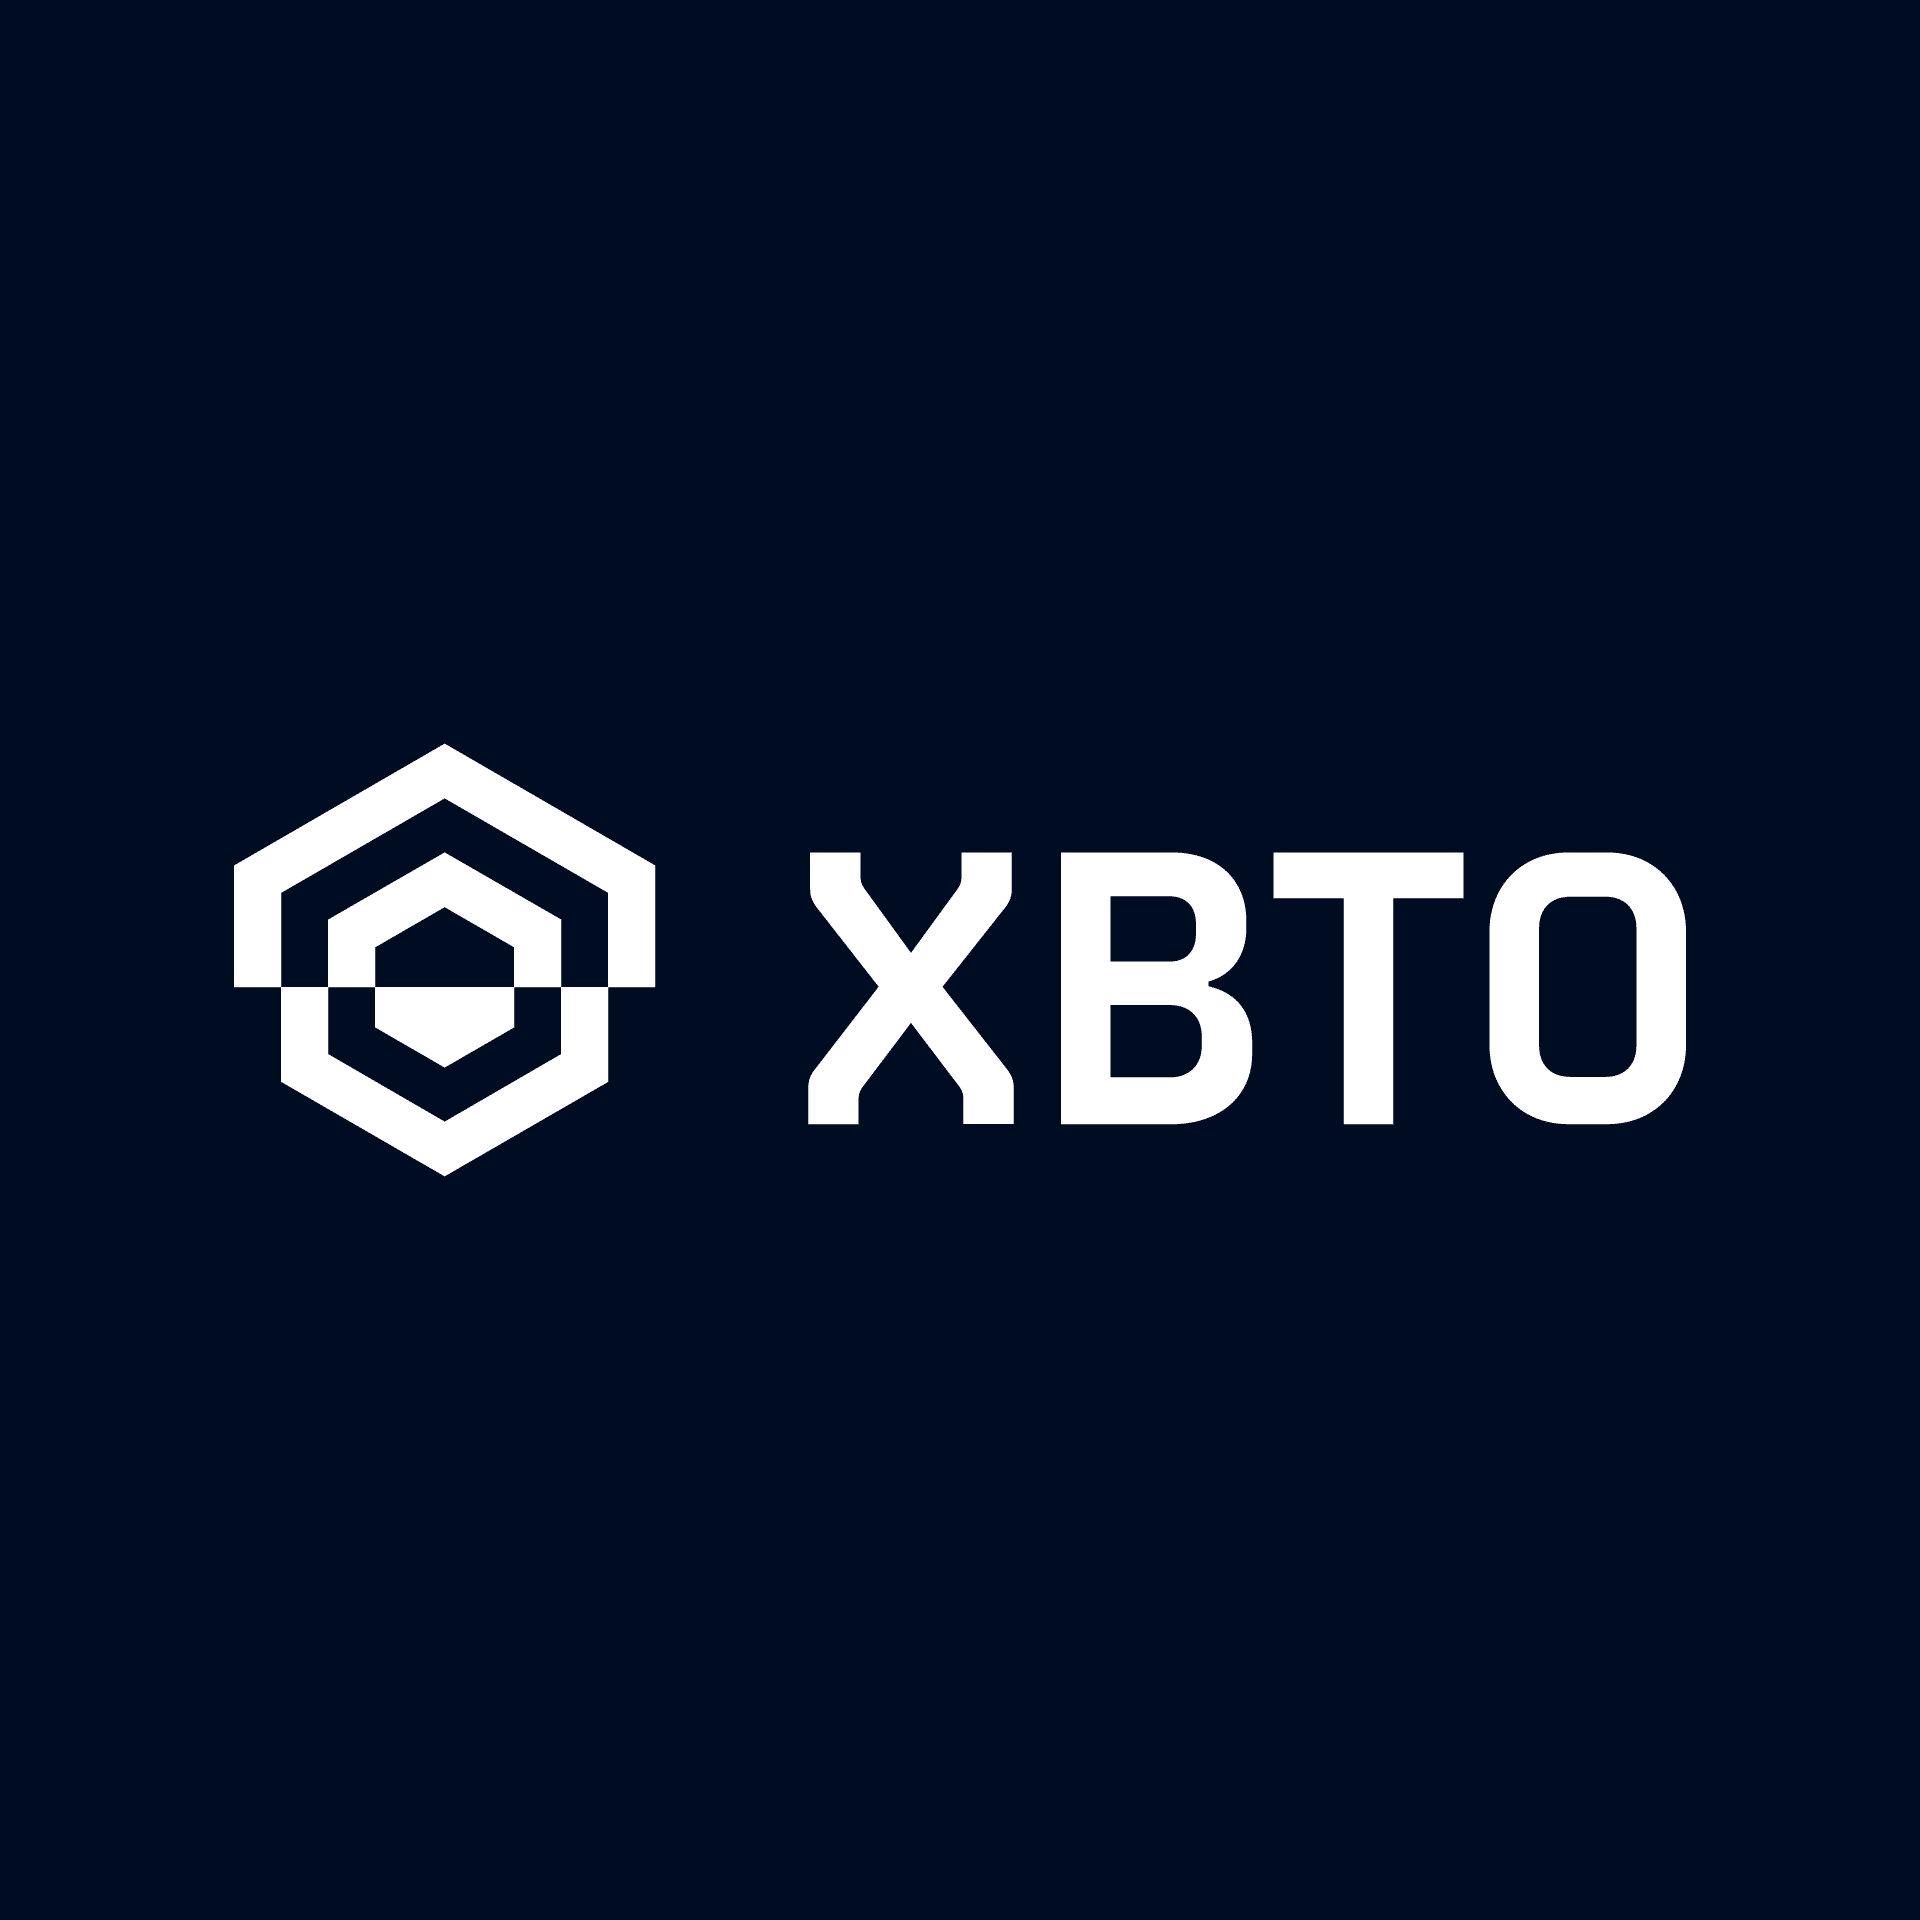 XBTO Logo